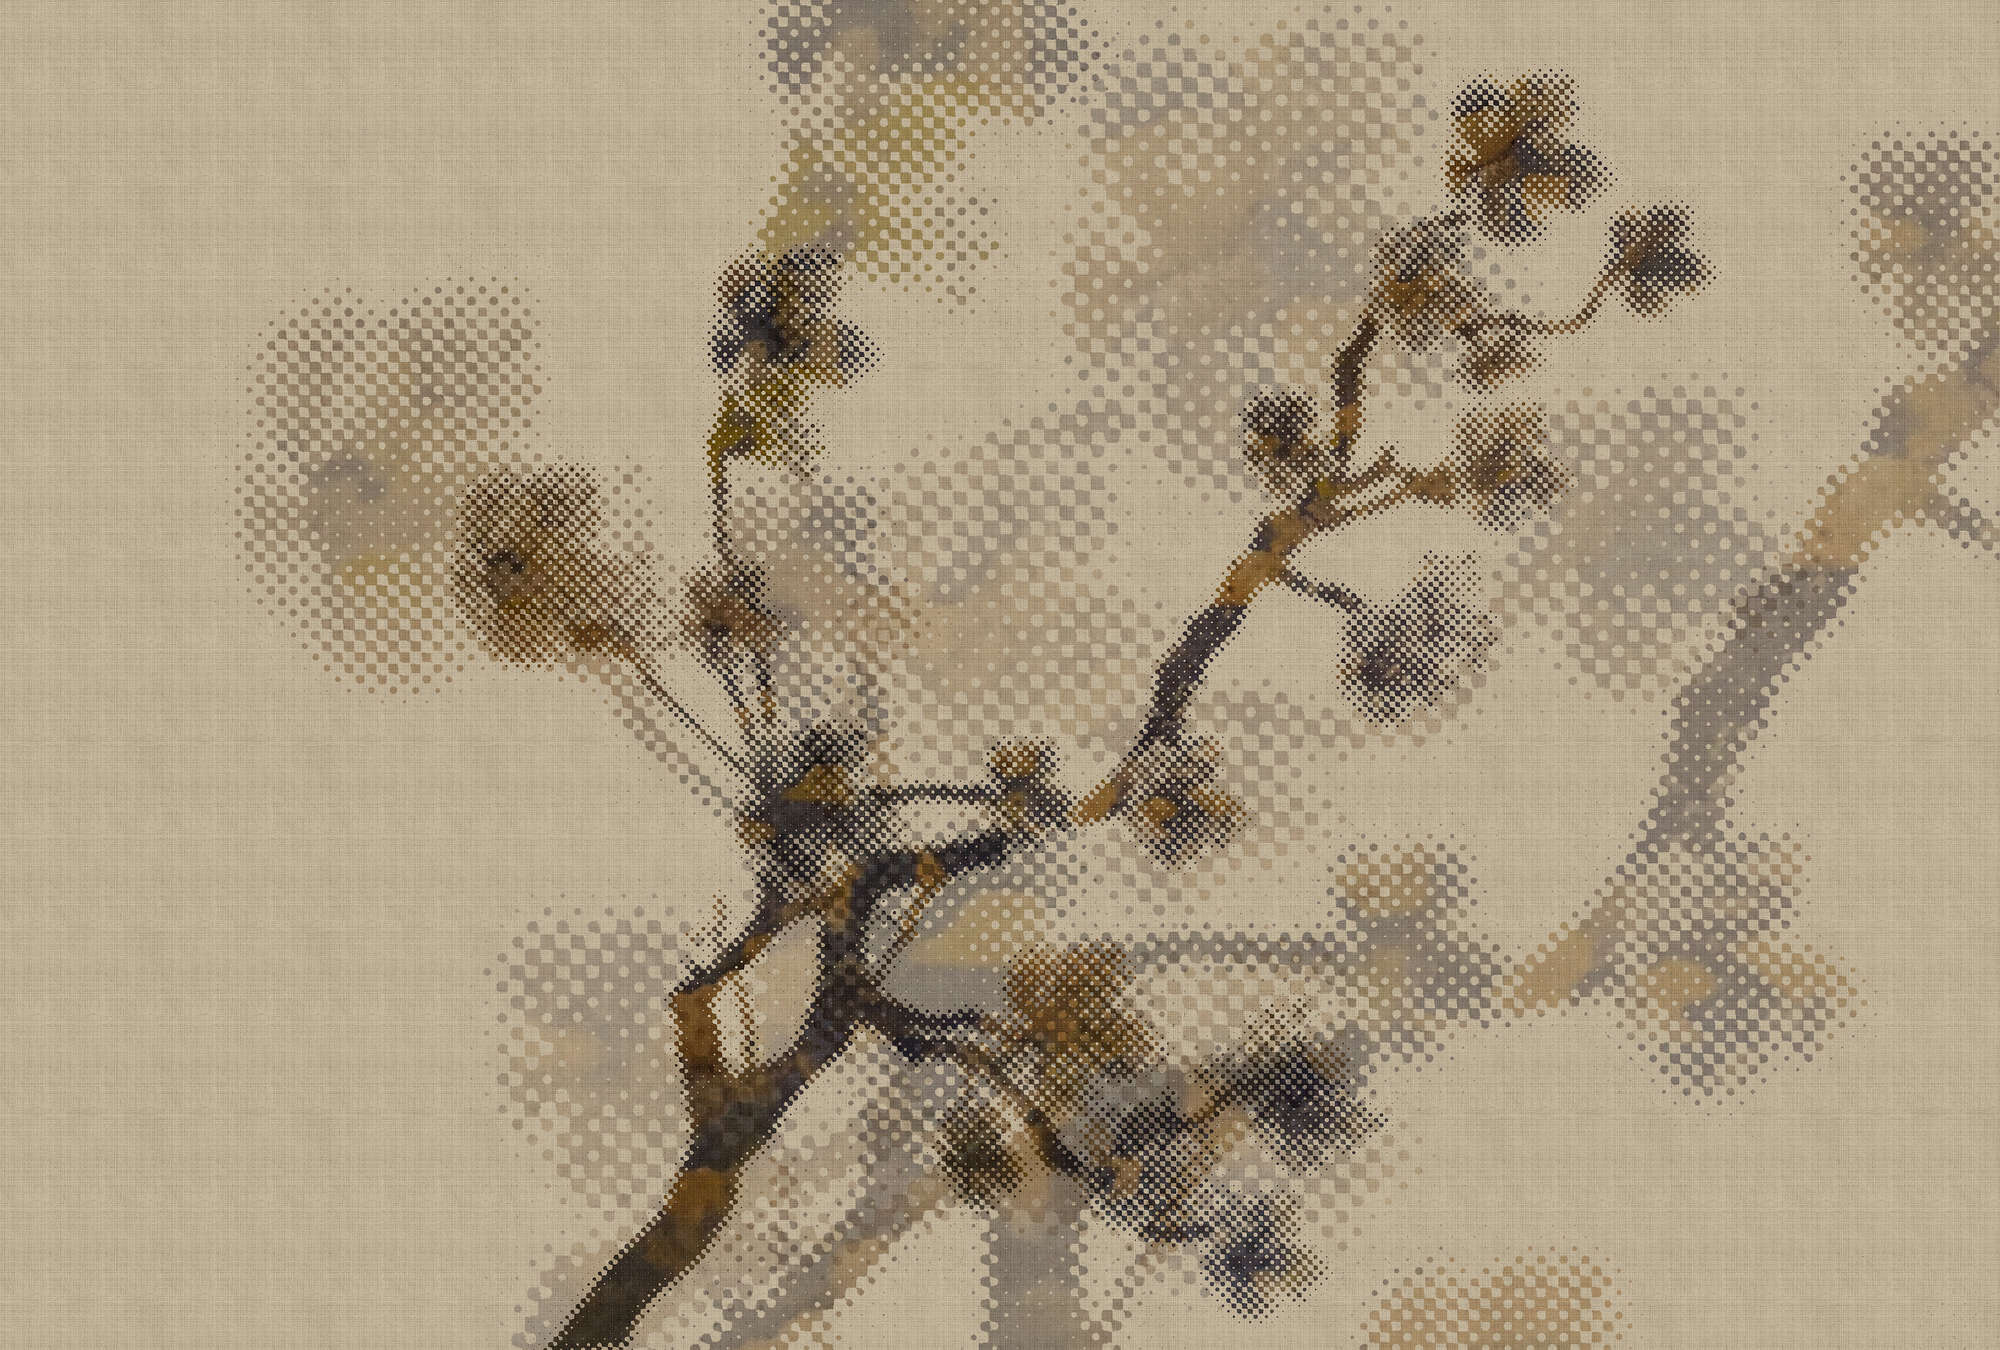             Twigs 2 - Papel pintado de estructura de lino natural con motivo de ramitas y diseño de píxeles - Beige | Estructura no tejida
        